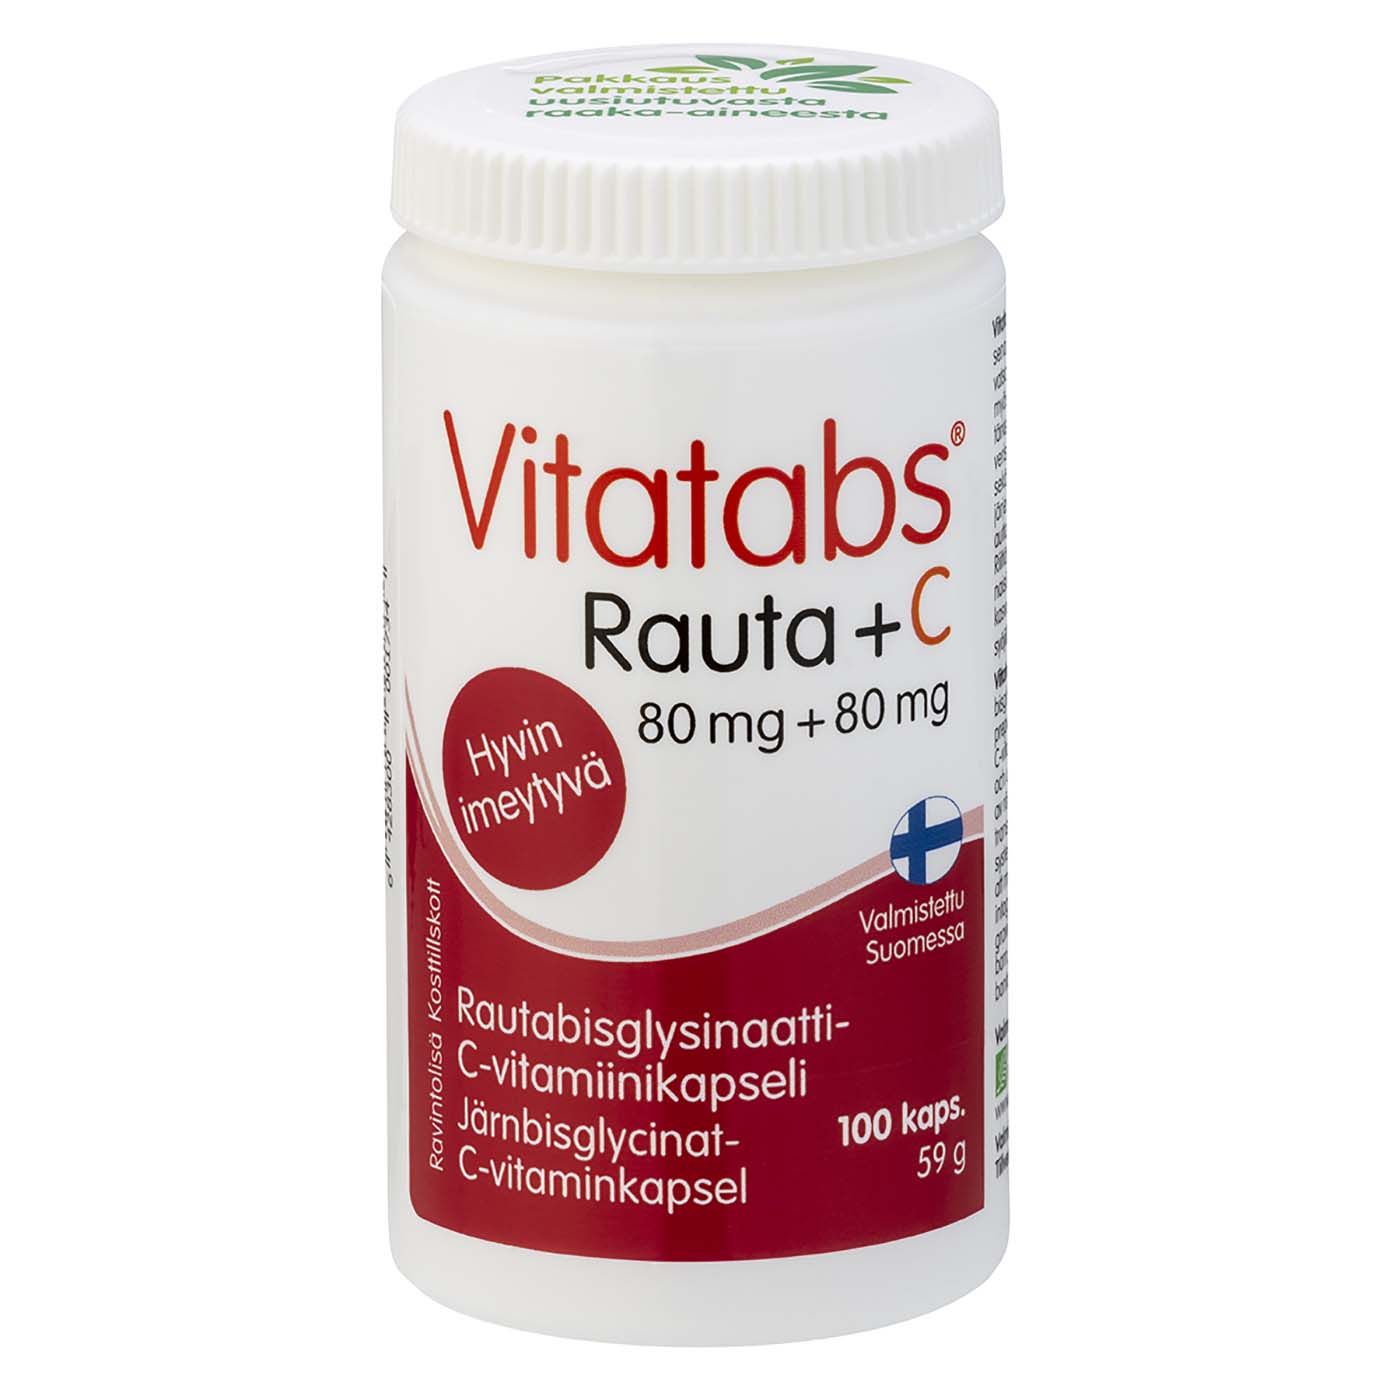 Vitatabs Iron supplement